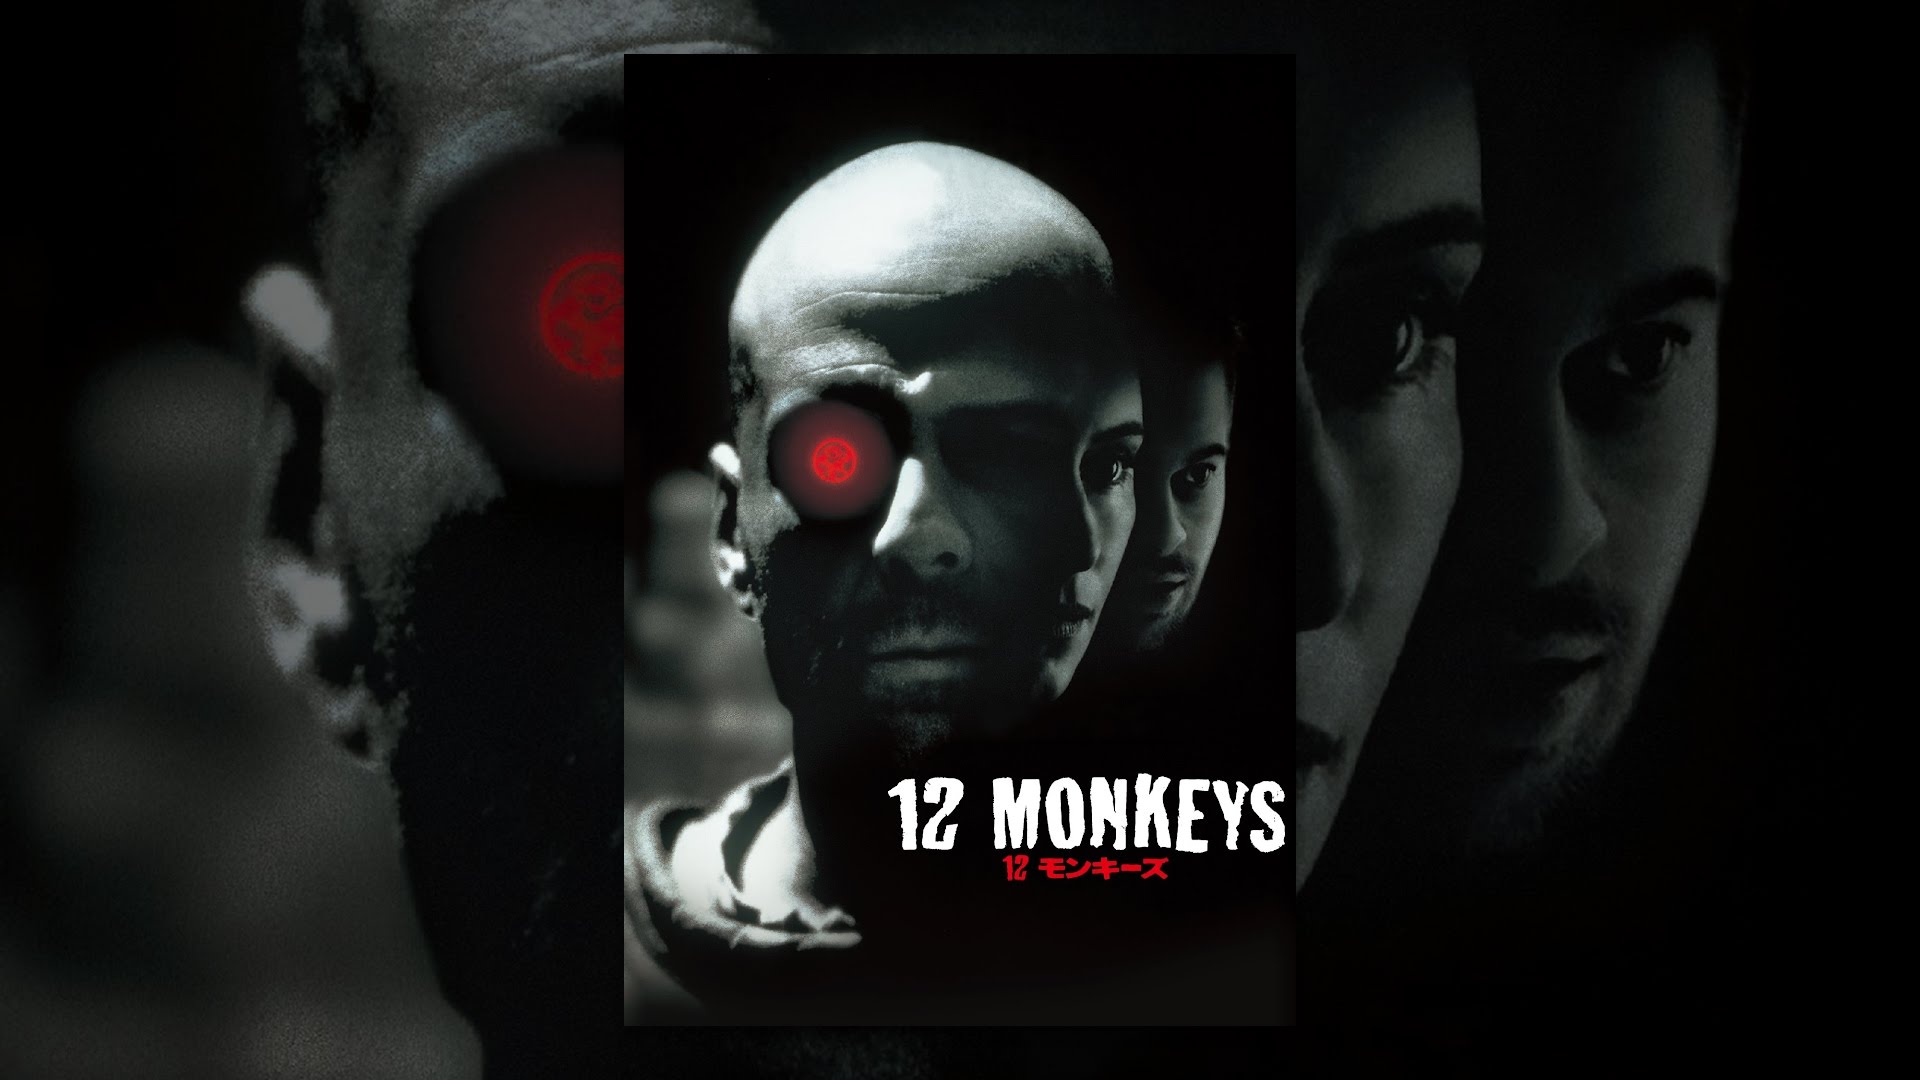 映画Twelve Monkeys(12モンキーズ)の名言・名セリフから英語が勉強できる動画、英単語リストページのイメージ画像